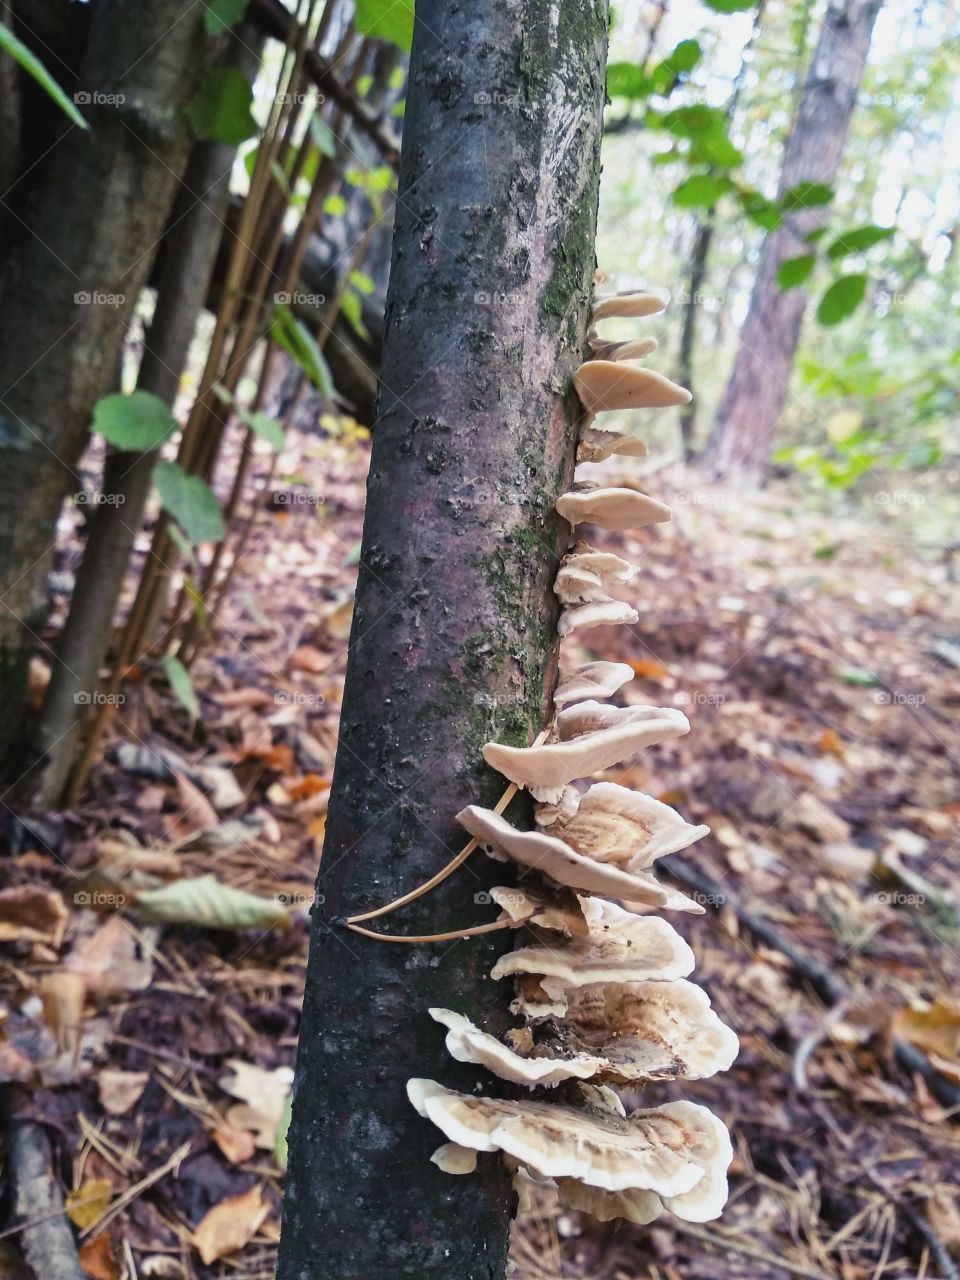 Mushrooms on the tree